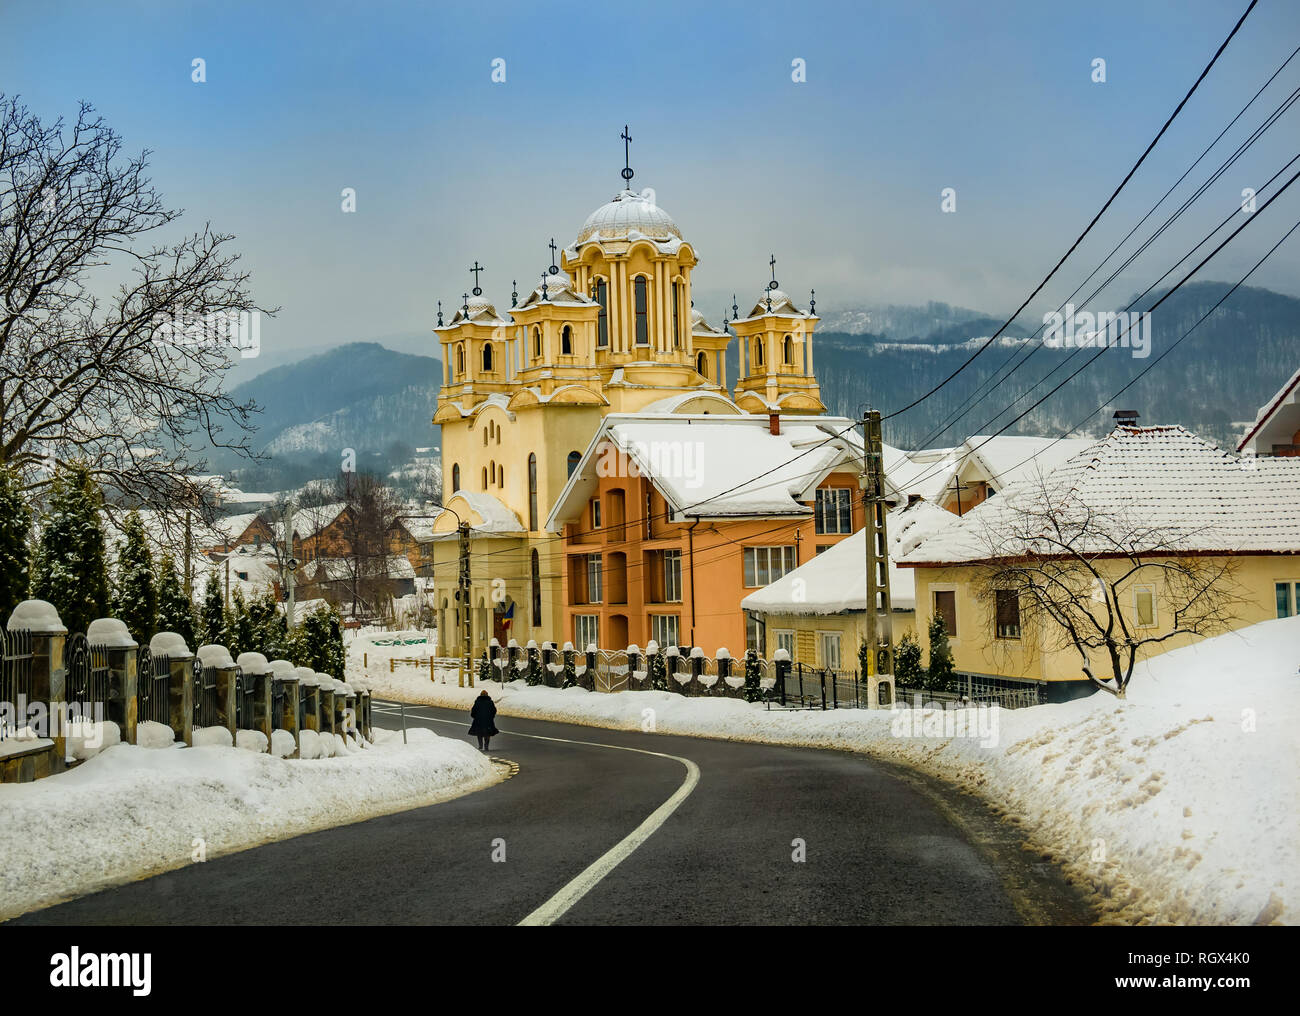 Église chrétienne orthodoxe dans le village de Certeze en hiver, région de Maramures en Roumanie Banque D'Images